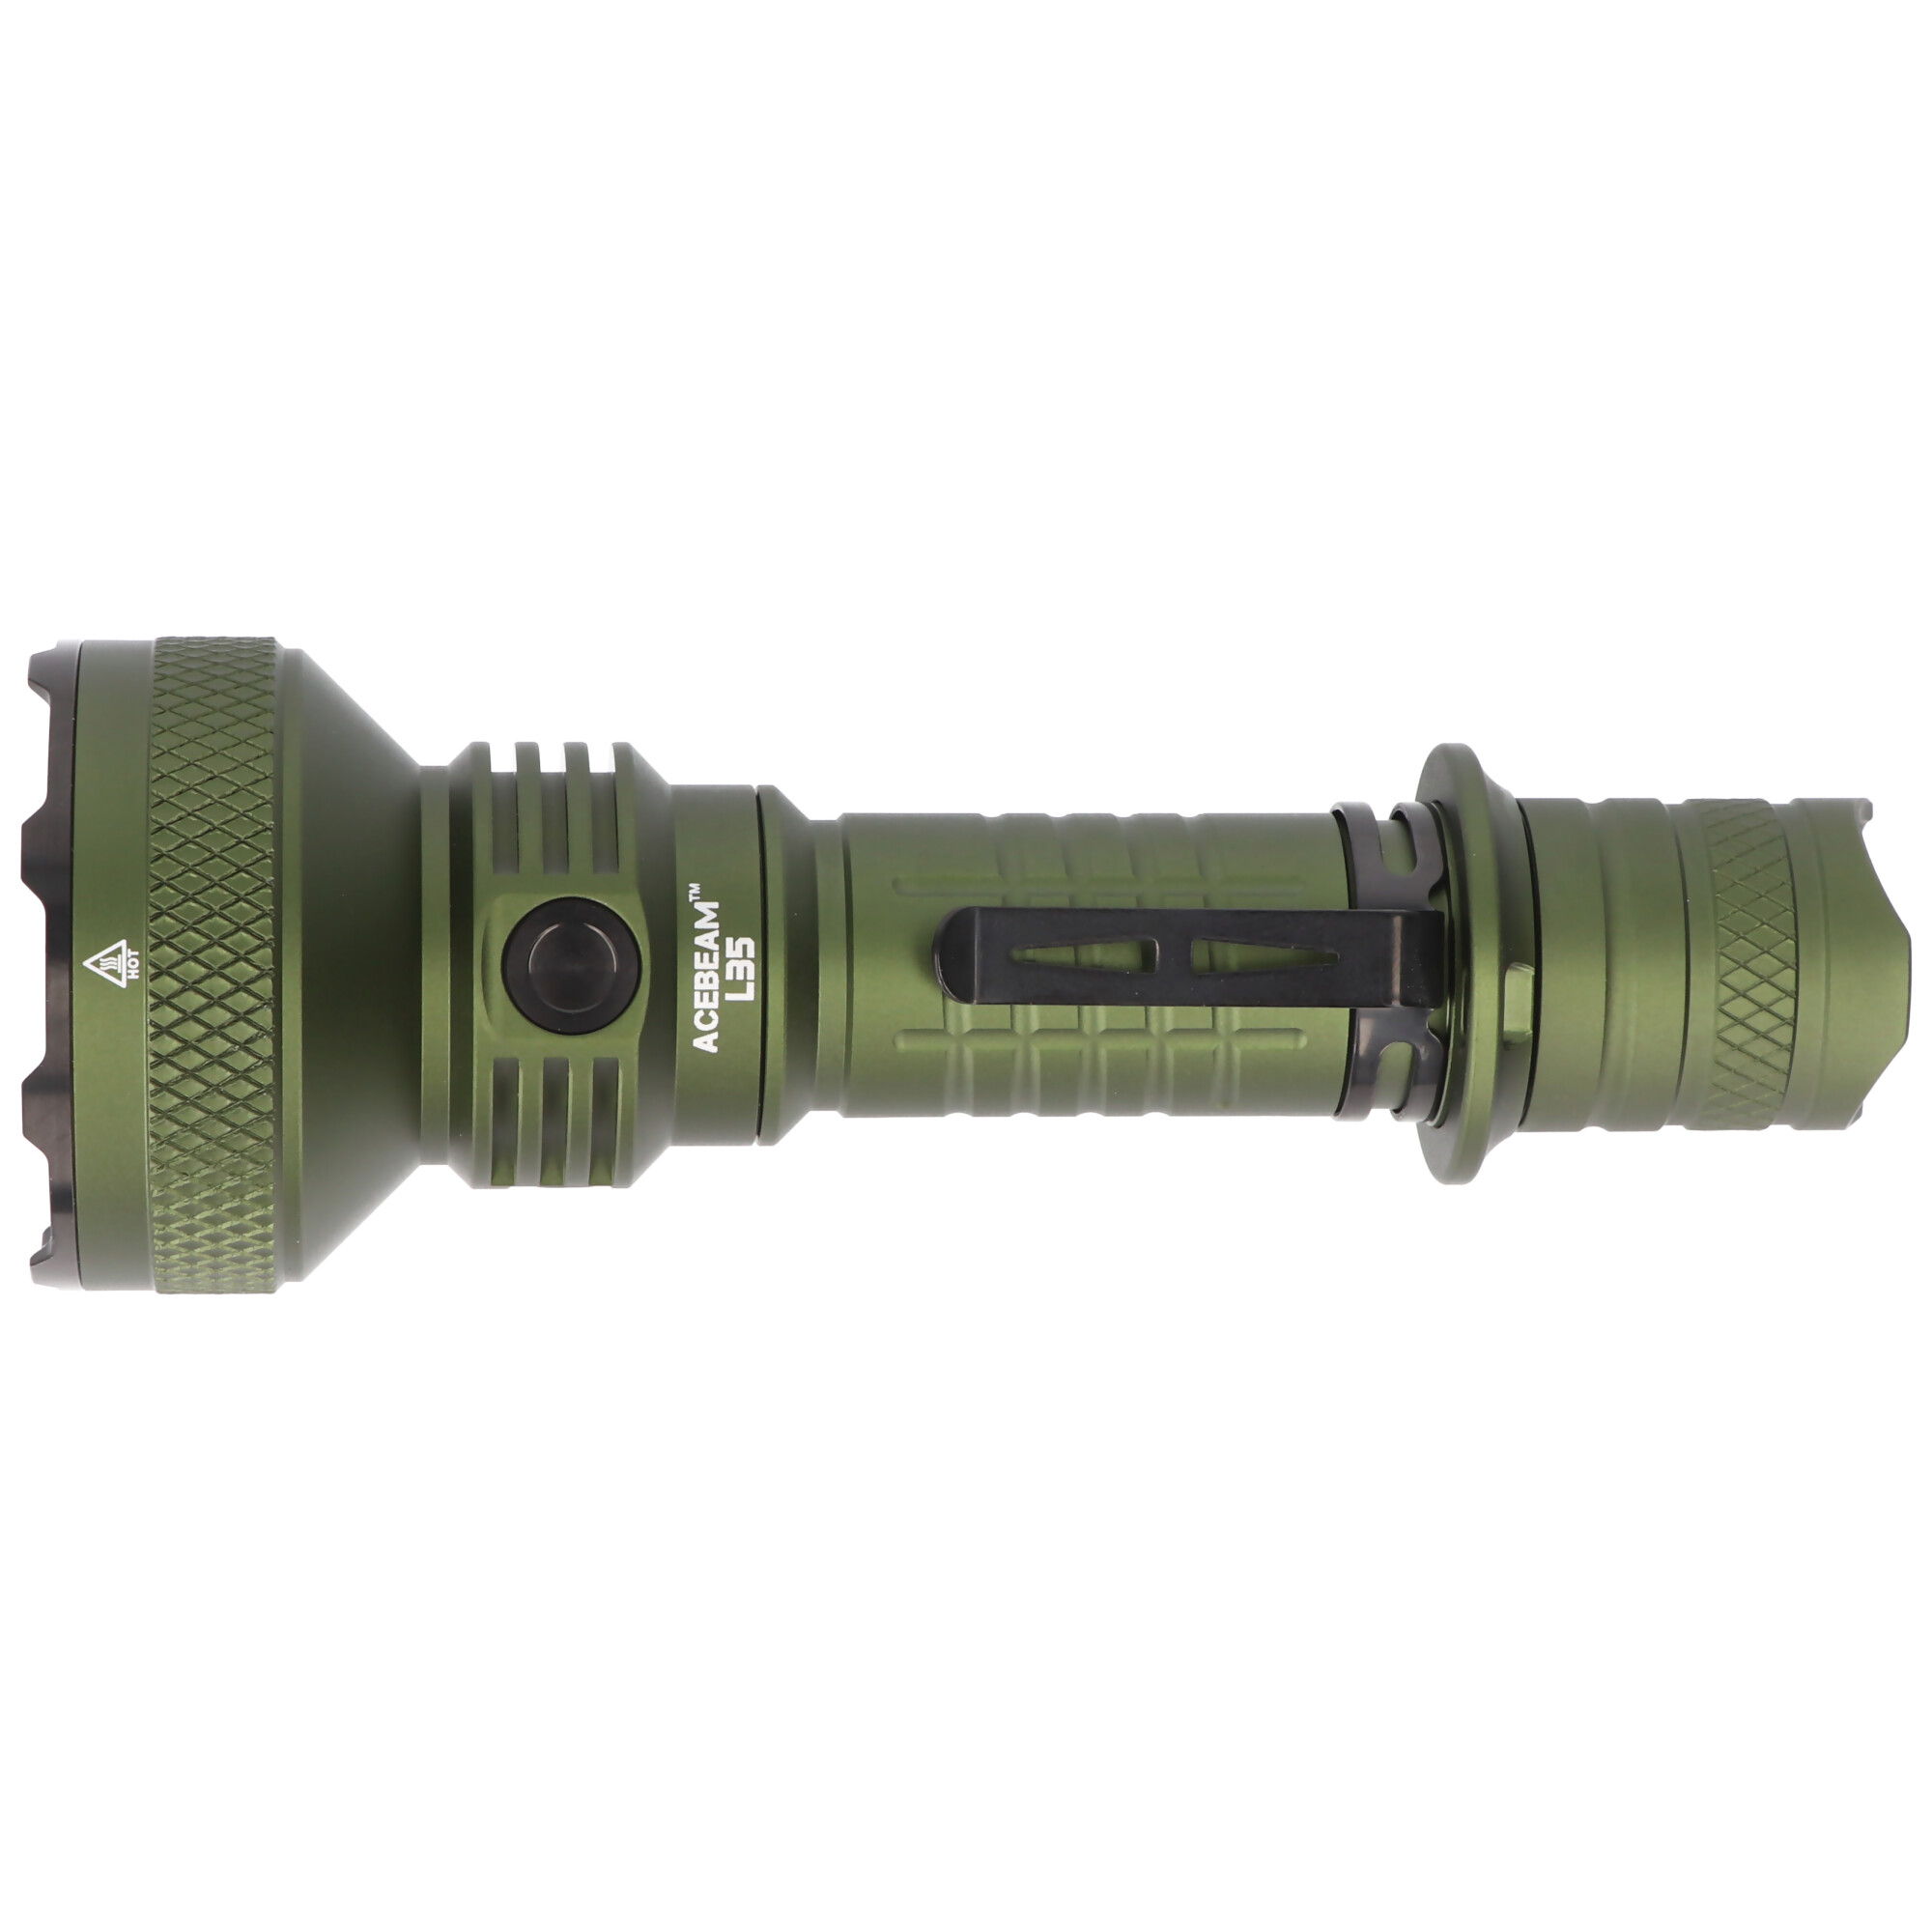 AceBeam L35 LED-Taschenlampe mit max. 5.000 Lumen und bis zu 480 Meter, grün, ohne Akku